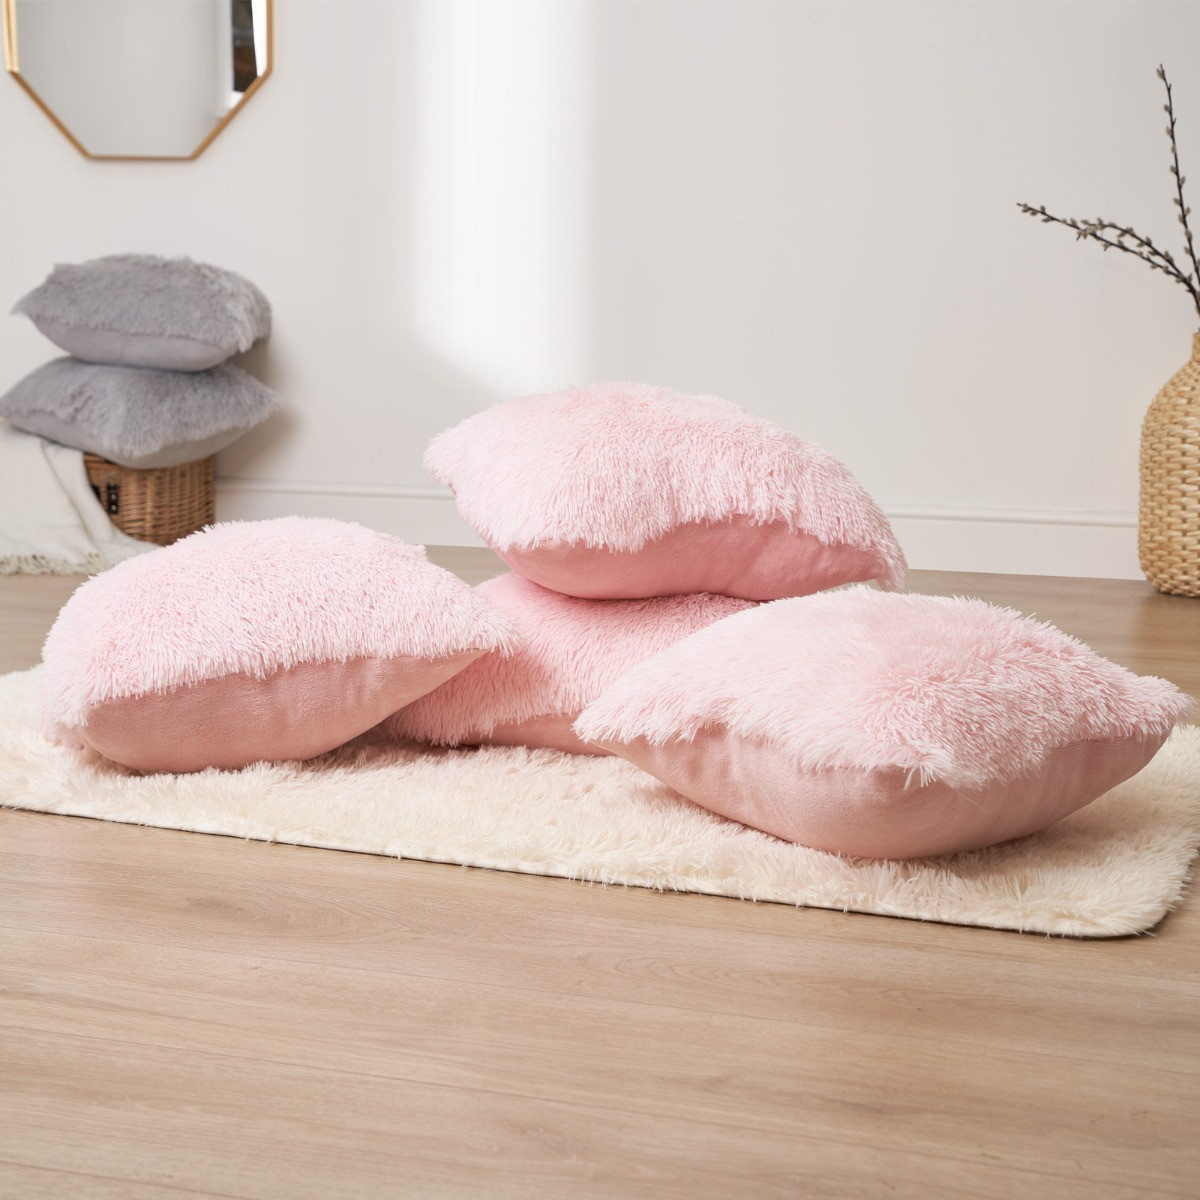 Sienna 4 Pack Fluffy Cushion Covers, Blush - 55 x 55cm>